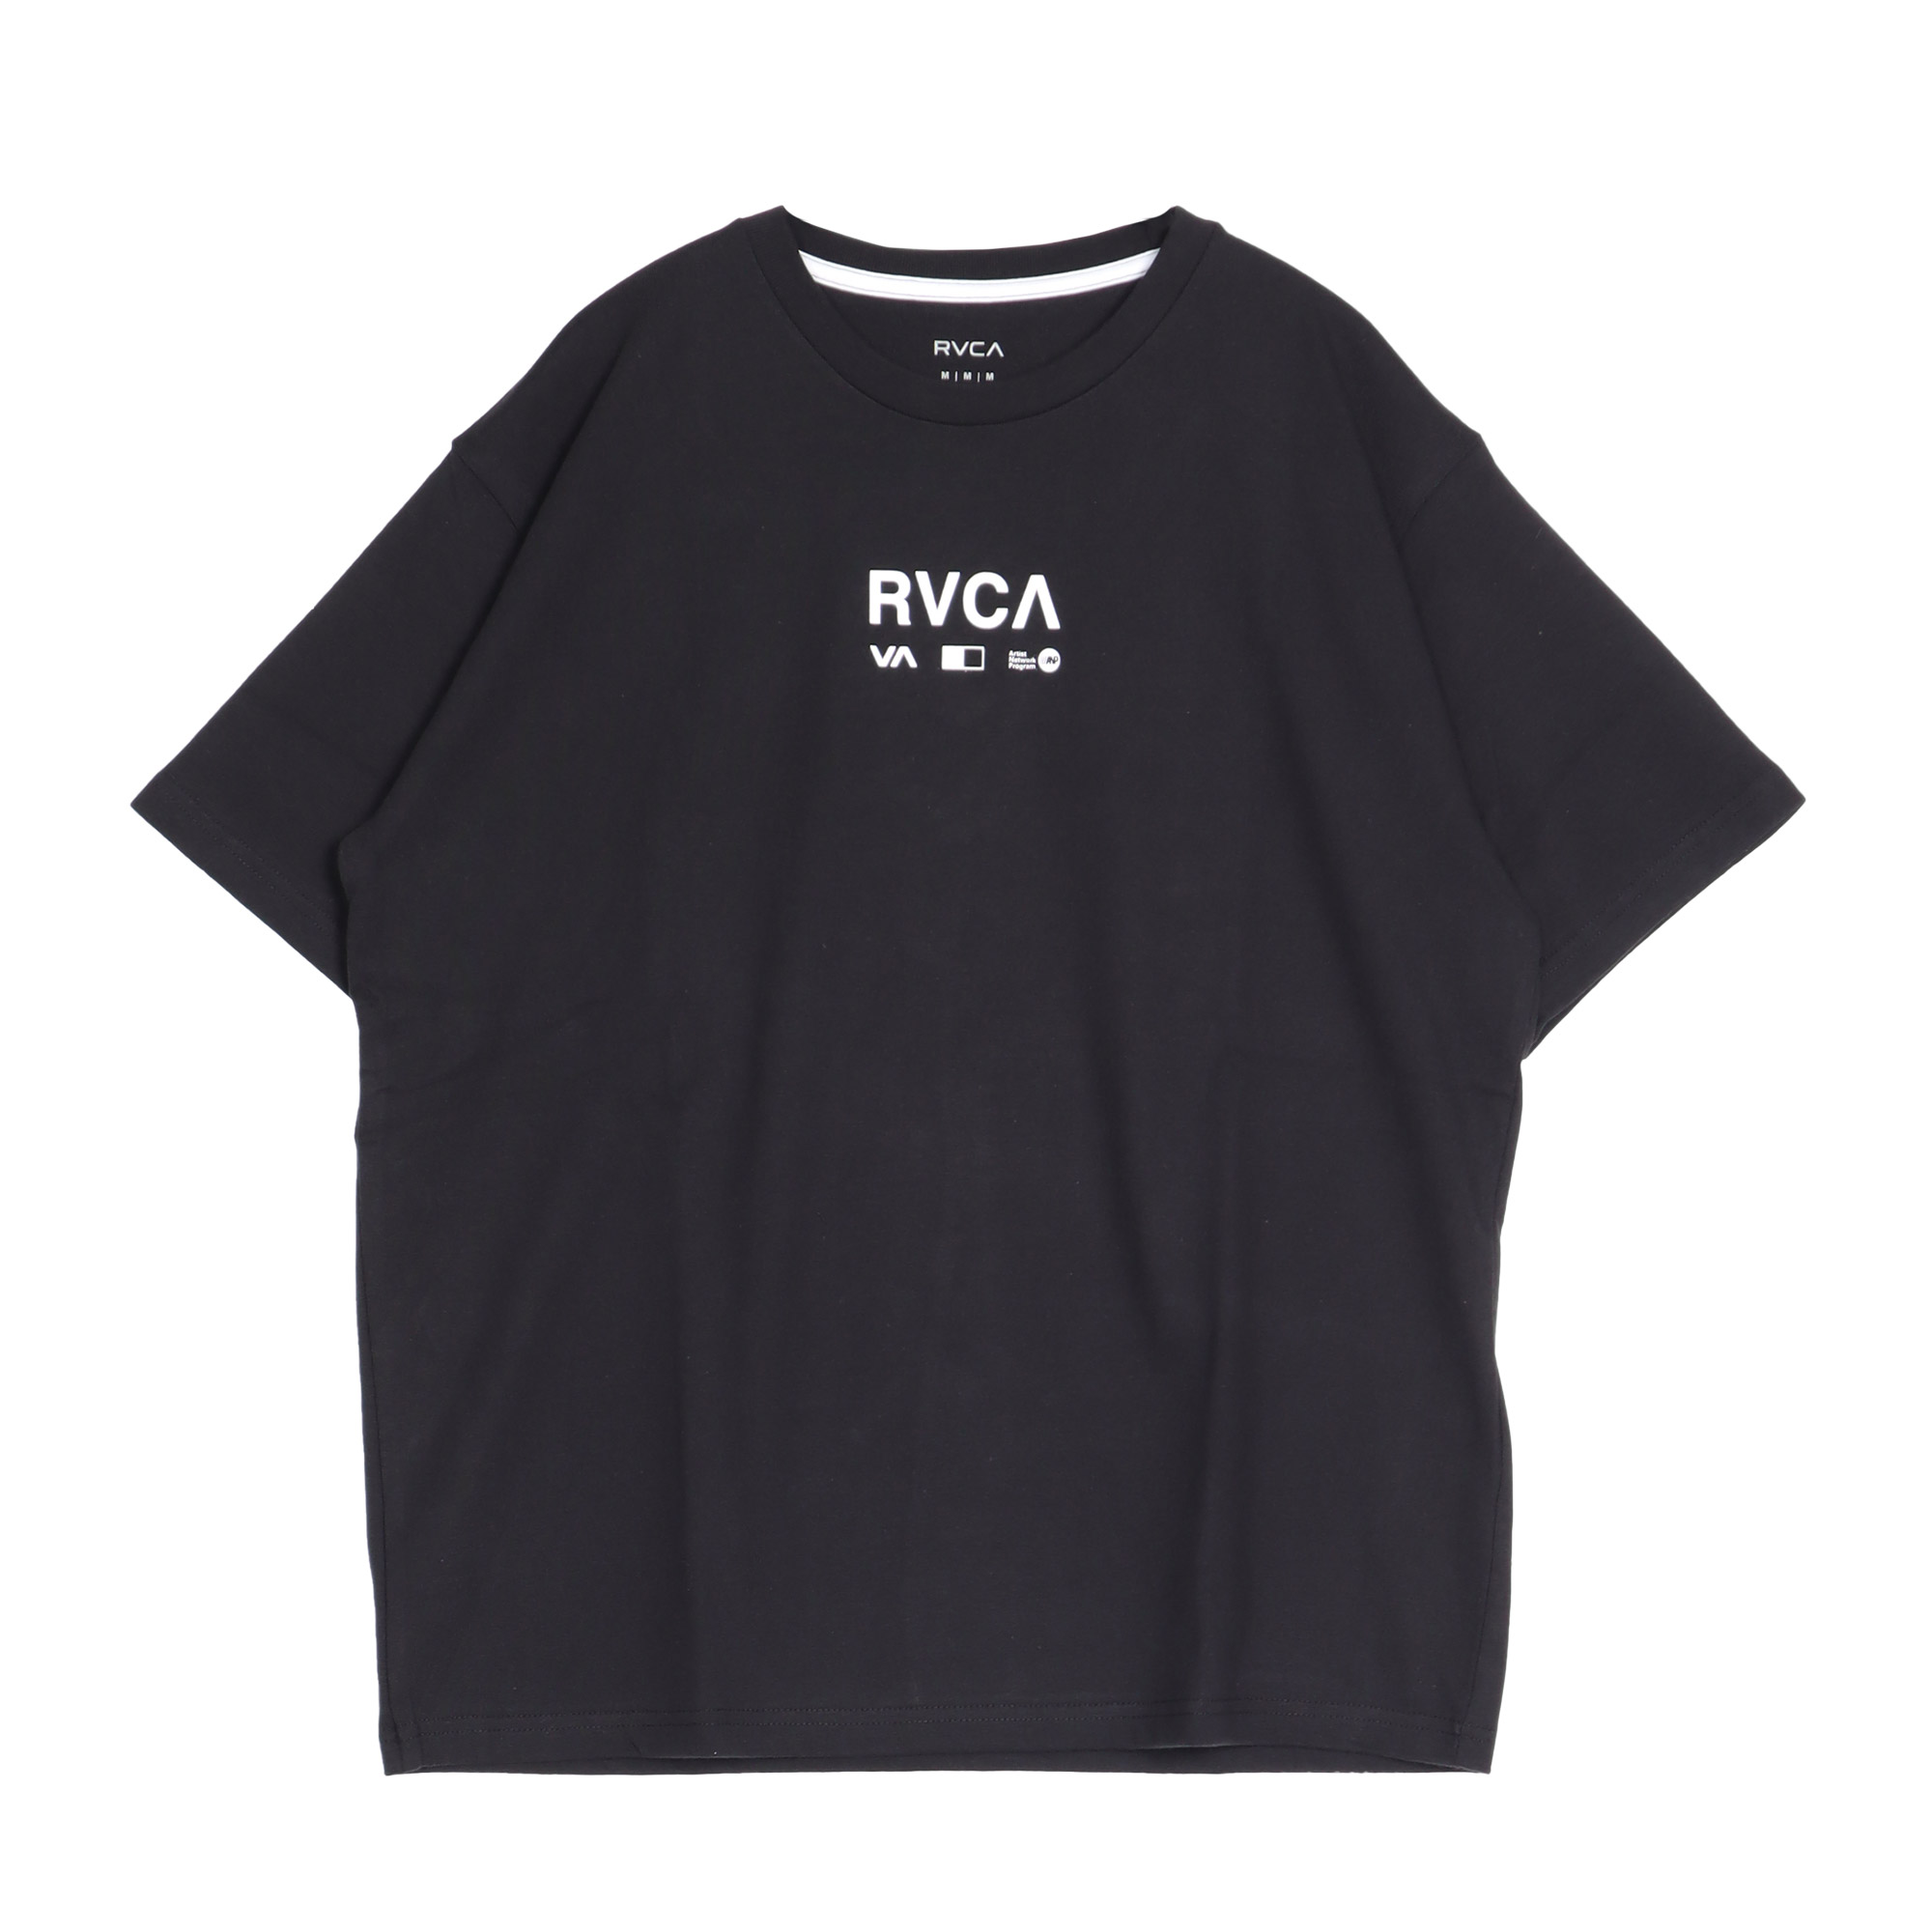 ルーカ 半袖Tシャツ メンズ RVCA BE04A241 ブラック 黒 ホワイト 白 トップス Tシ...